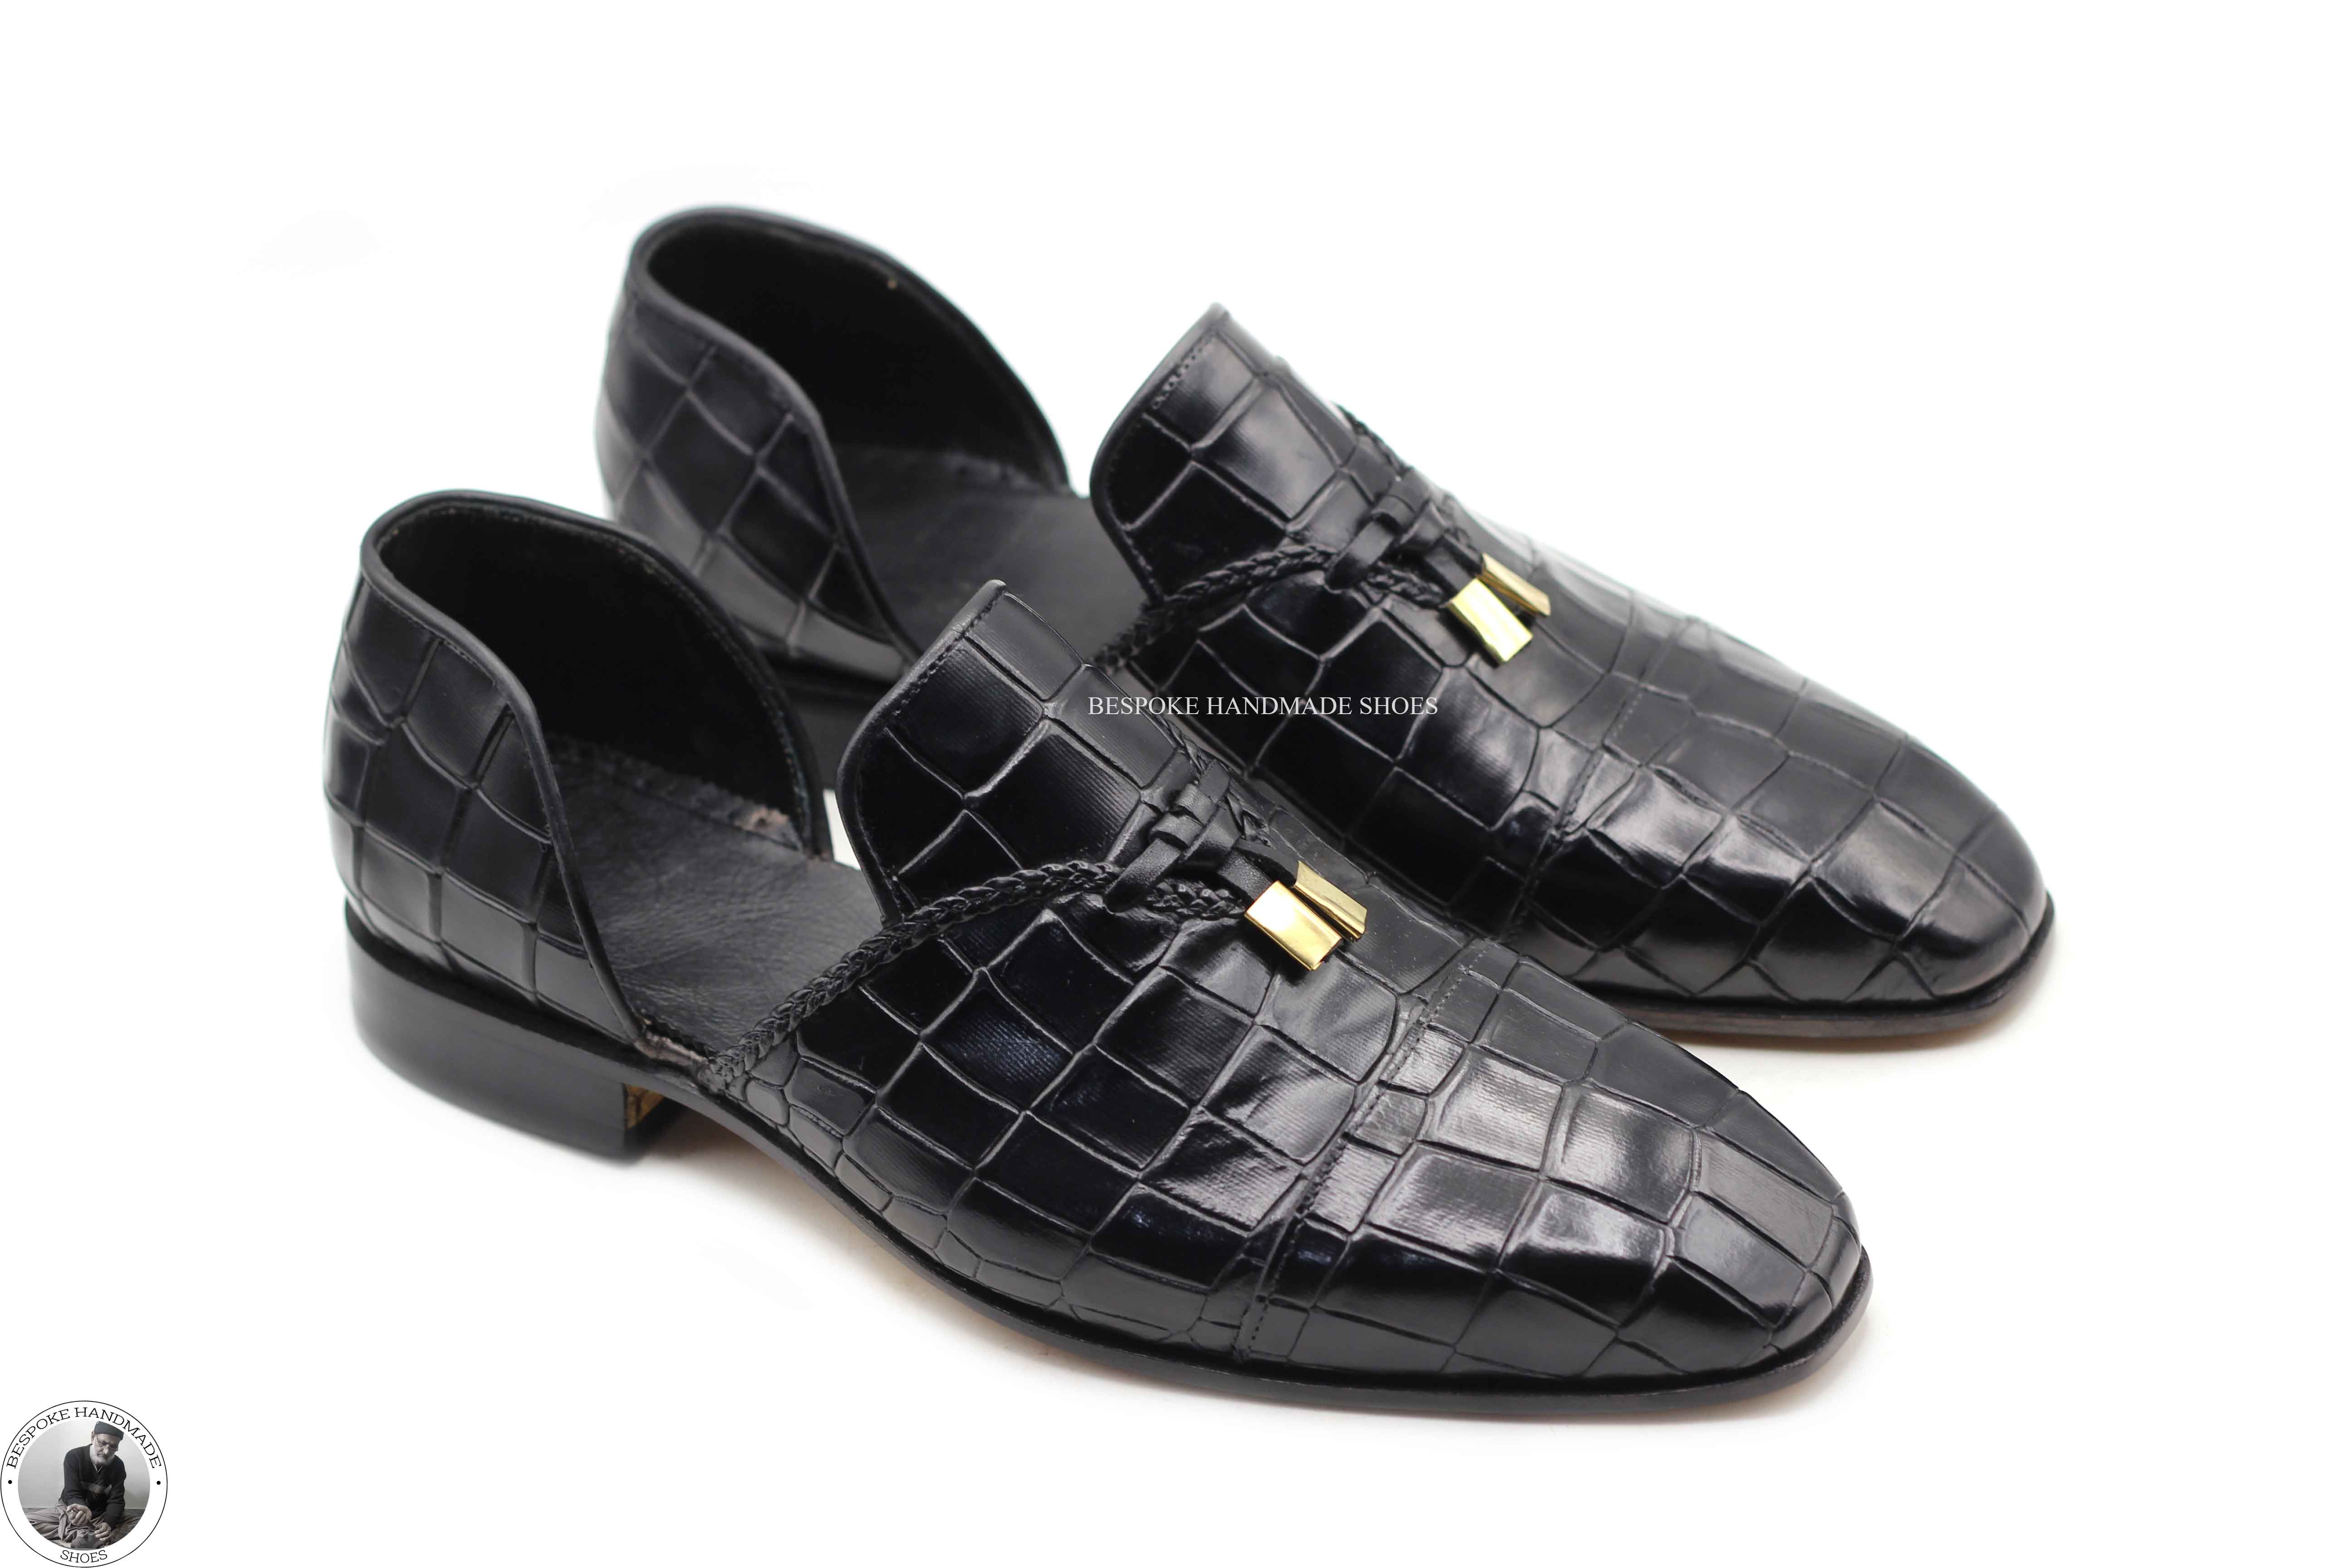 Custom Made Men's Black Leather Half Shoe Moccasin Leather Tassels Formal Men's Shoes